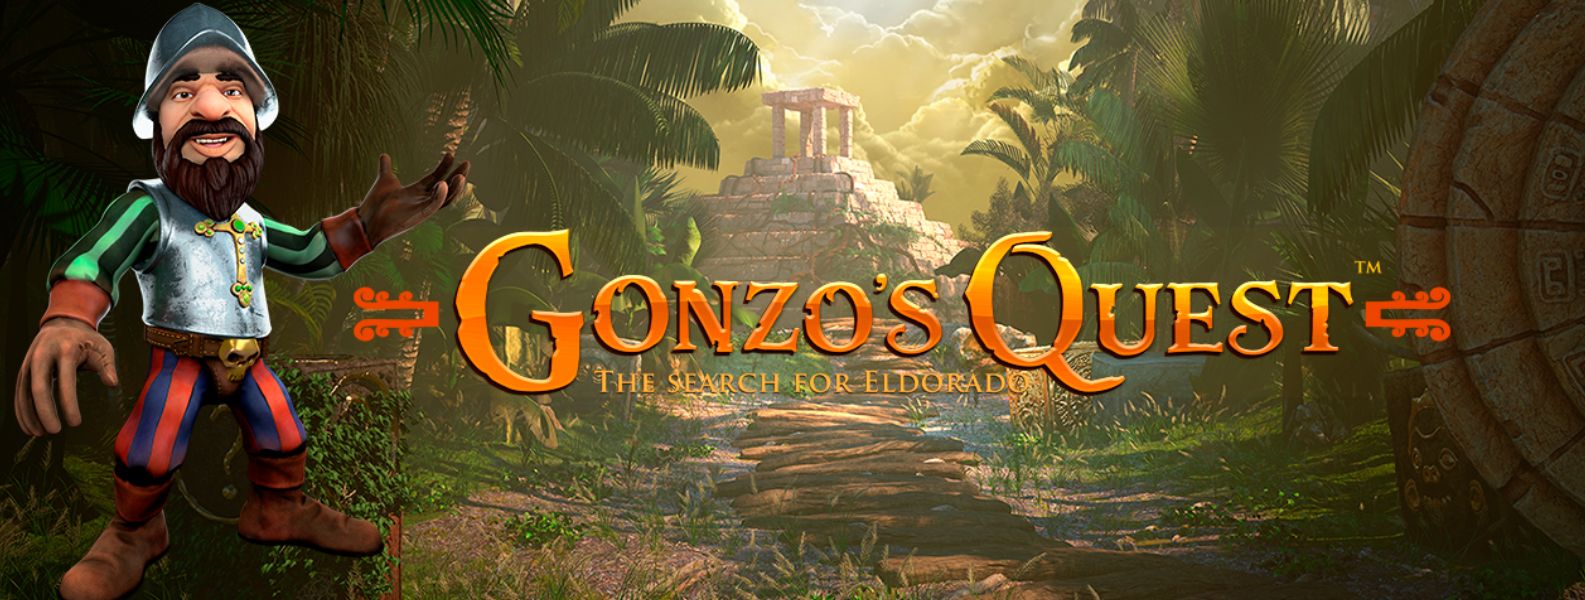 Desvelando los secretos de Gonzo’s Quest: Una guía para ganar a la tragaperras